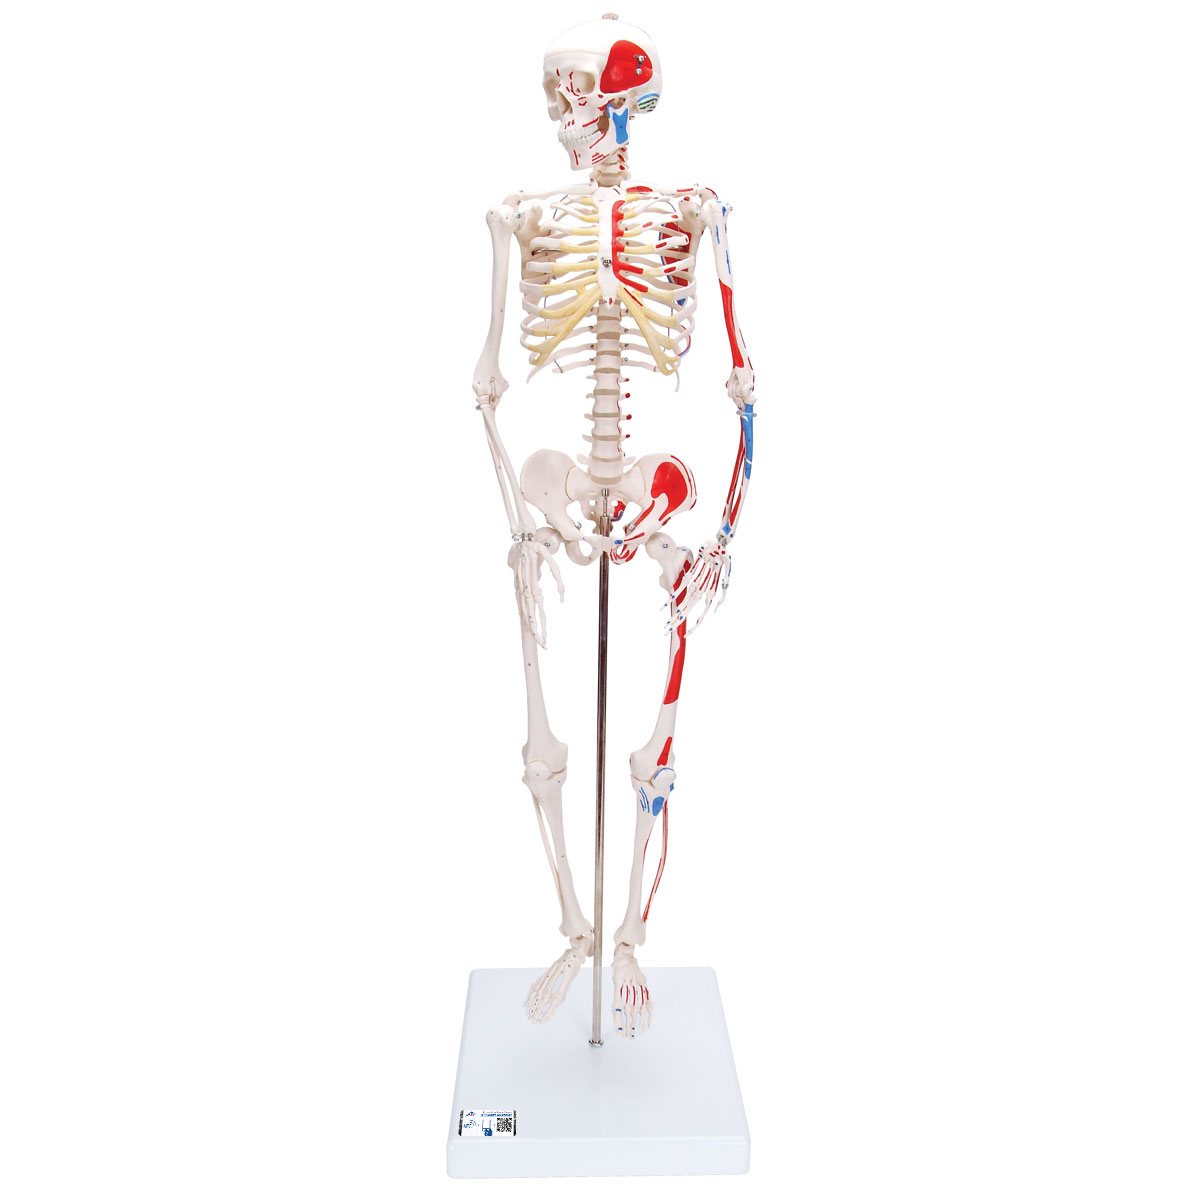 Mini Skelett Modell "Shorty", mit Muskelbemalung und 3-teiligem Schädel, auf Sockel - 3B Smart Anatomy, Bestellnummer 1000044, A18/5, 3B Scientific